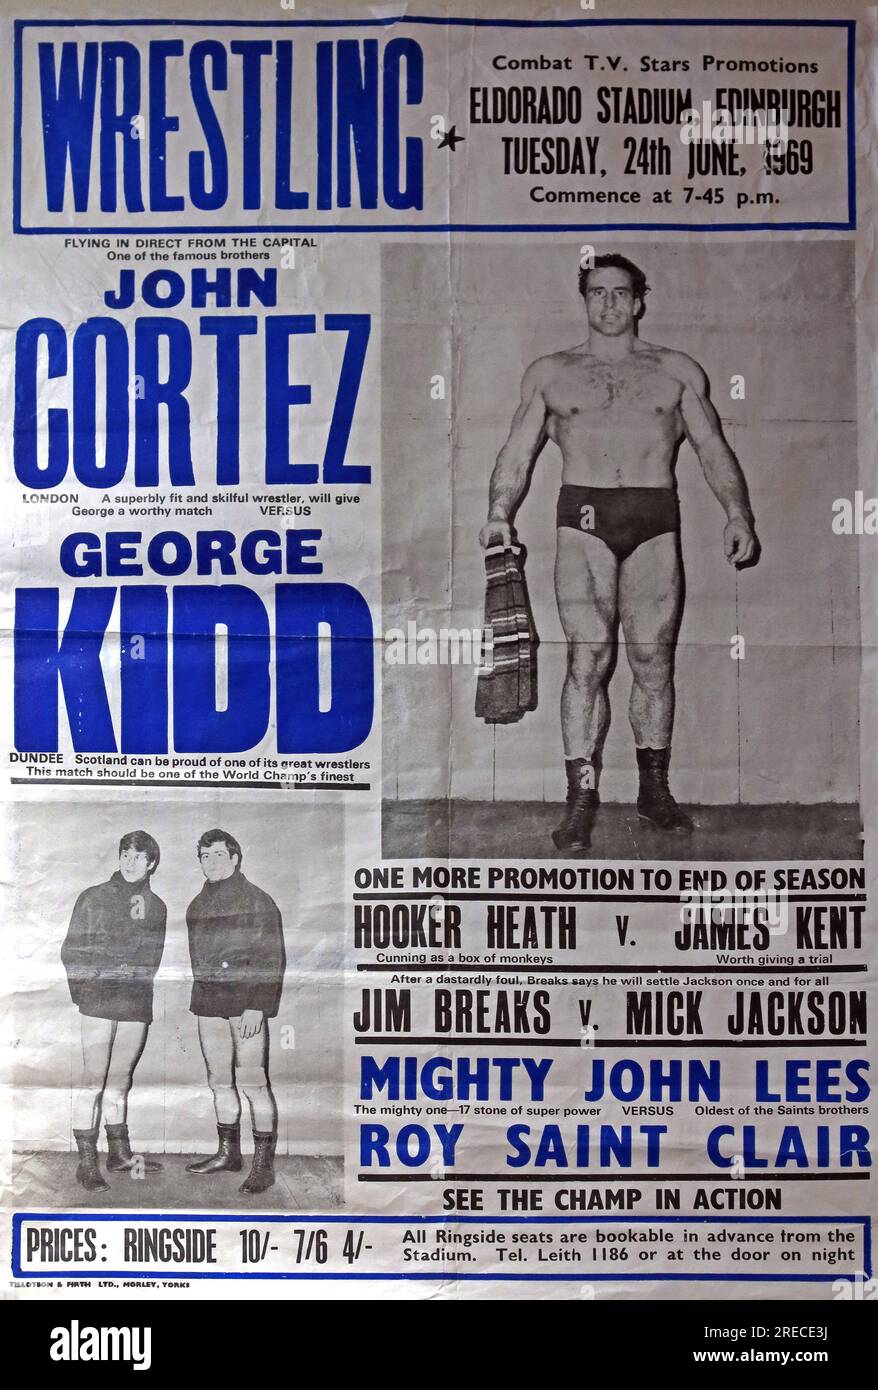 Combat TV Stars promotions, affiche de lutte, Eldorado Stadium, Édimbourg, mardi 24 juin 1969 - John Cortez, George Kidd lutteurs Banque D'Images